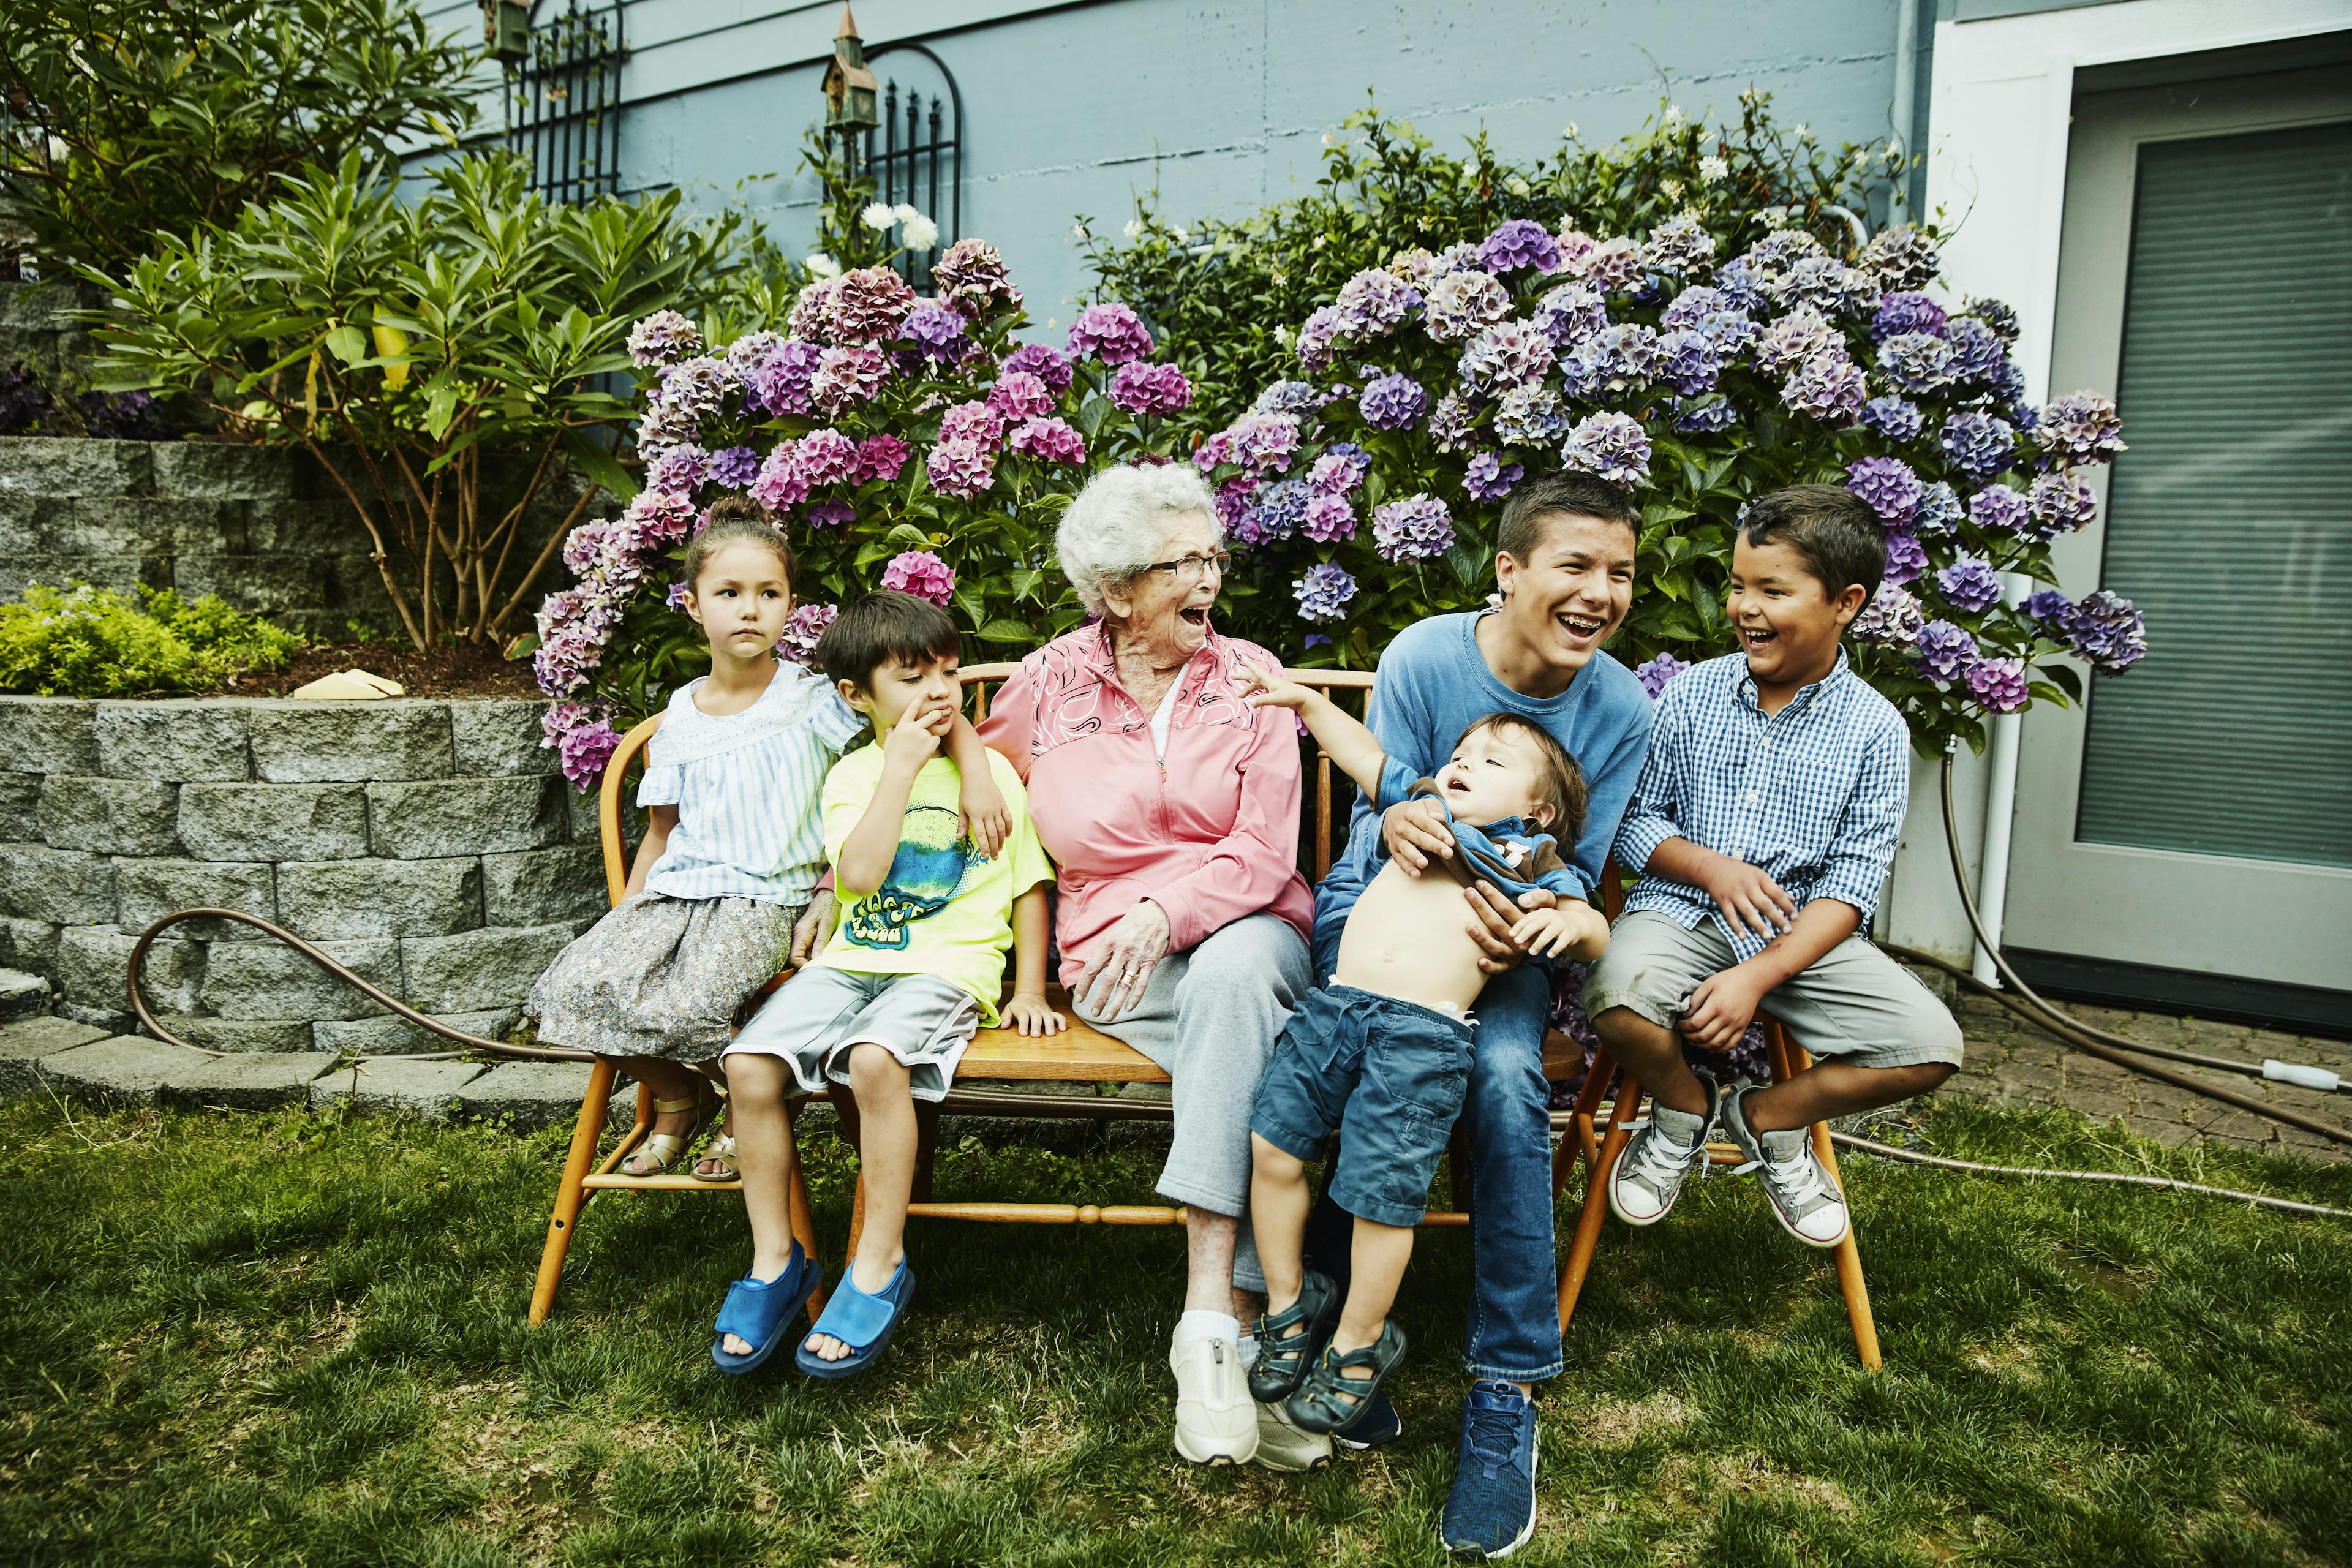 Grandmother in garden with grandchildren.